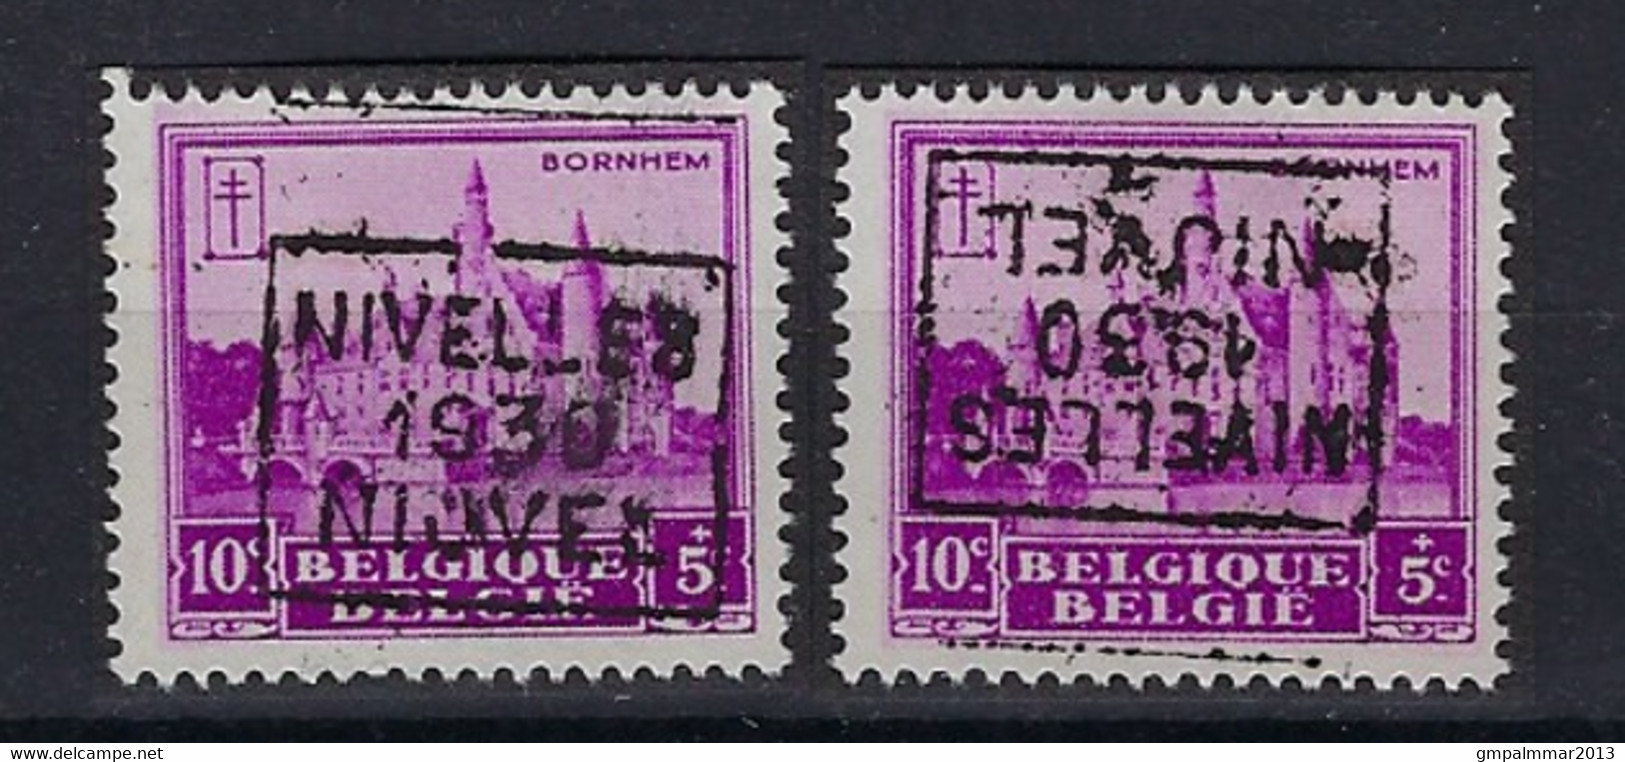 Nr. 308 Kasteel Bornem Voorafstempeling Nr. 5984   C + D NIVELLES 1930 NIJVEL ; Staat Zie Scan ! - Rollenmarken 1930-..